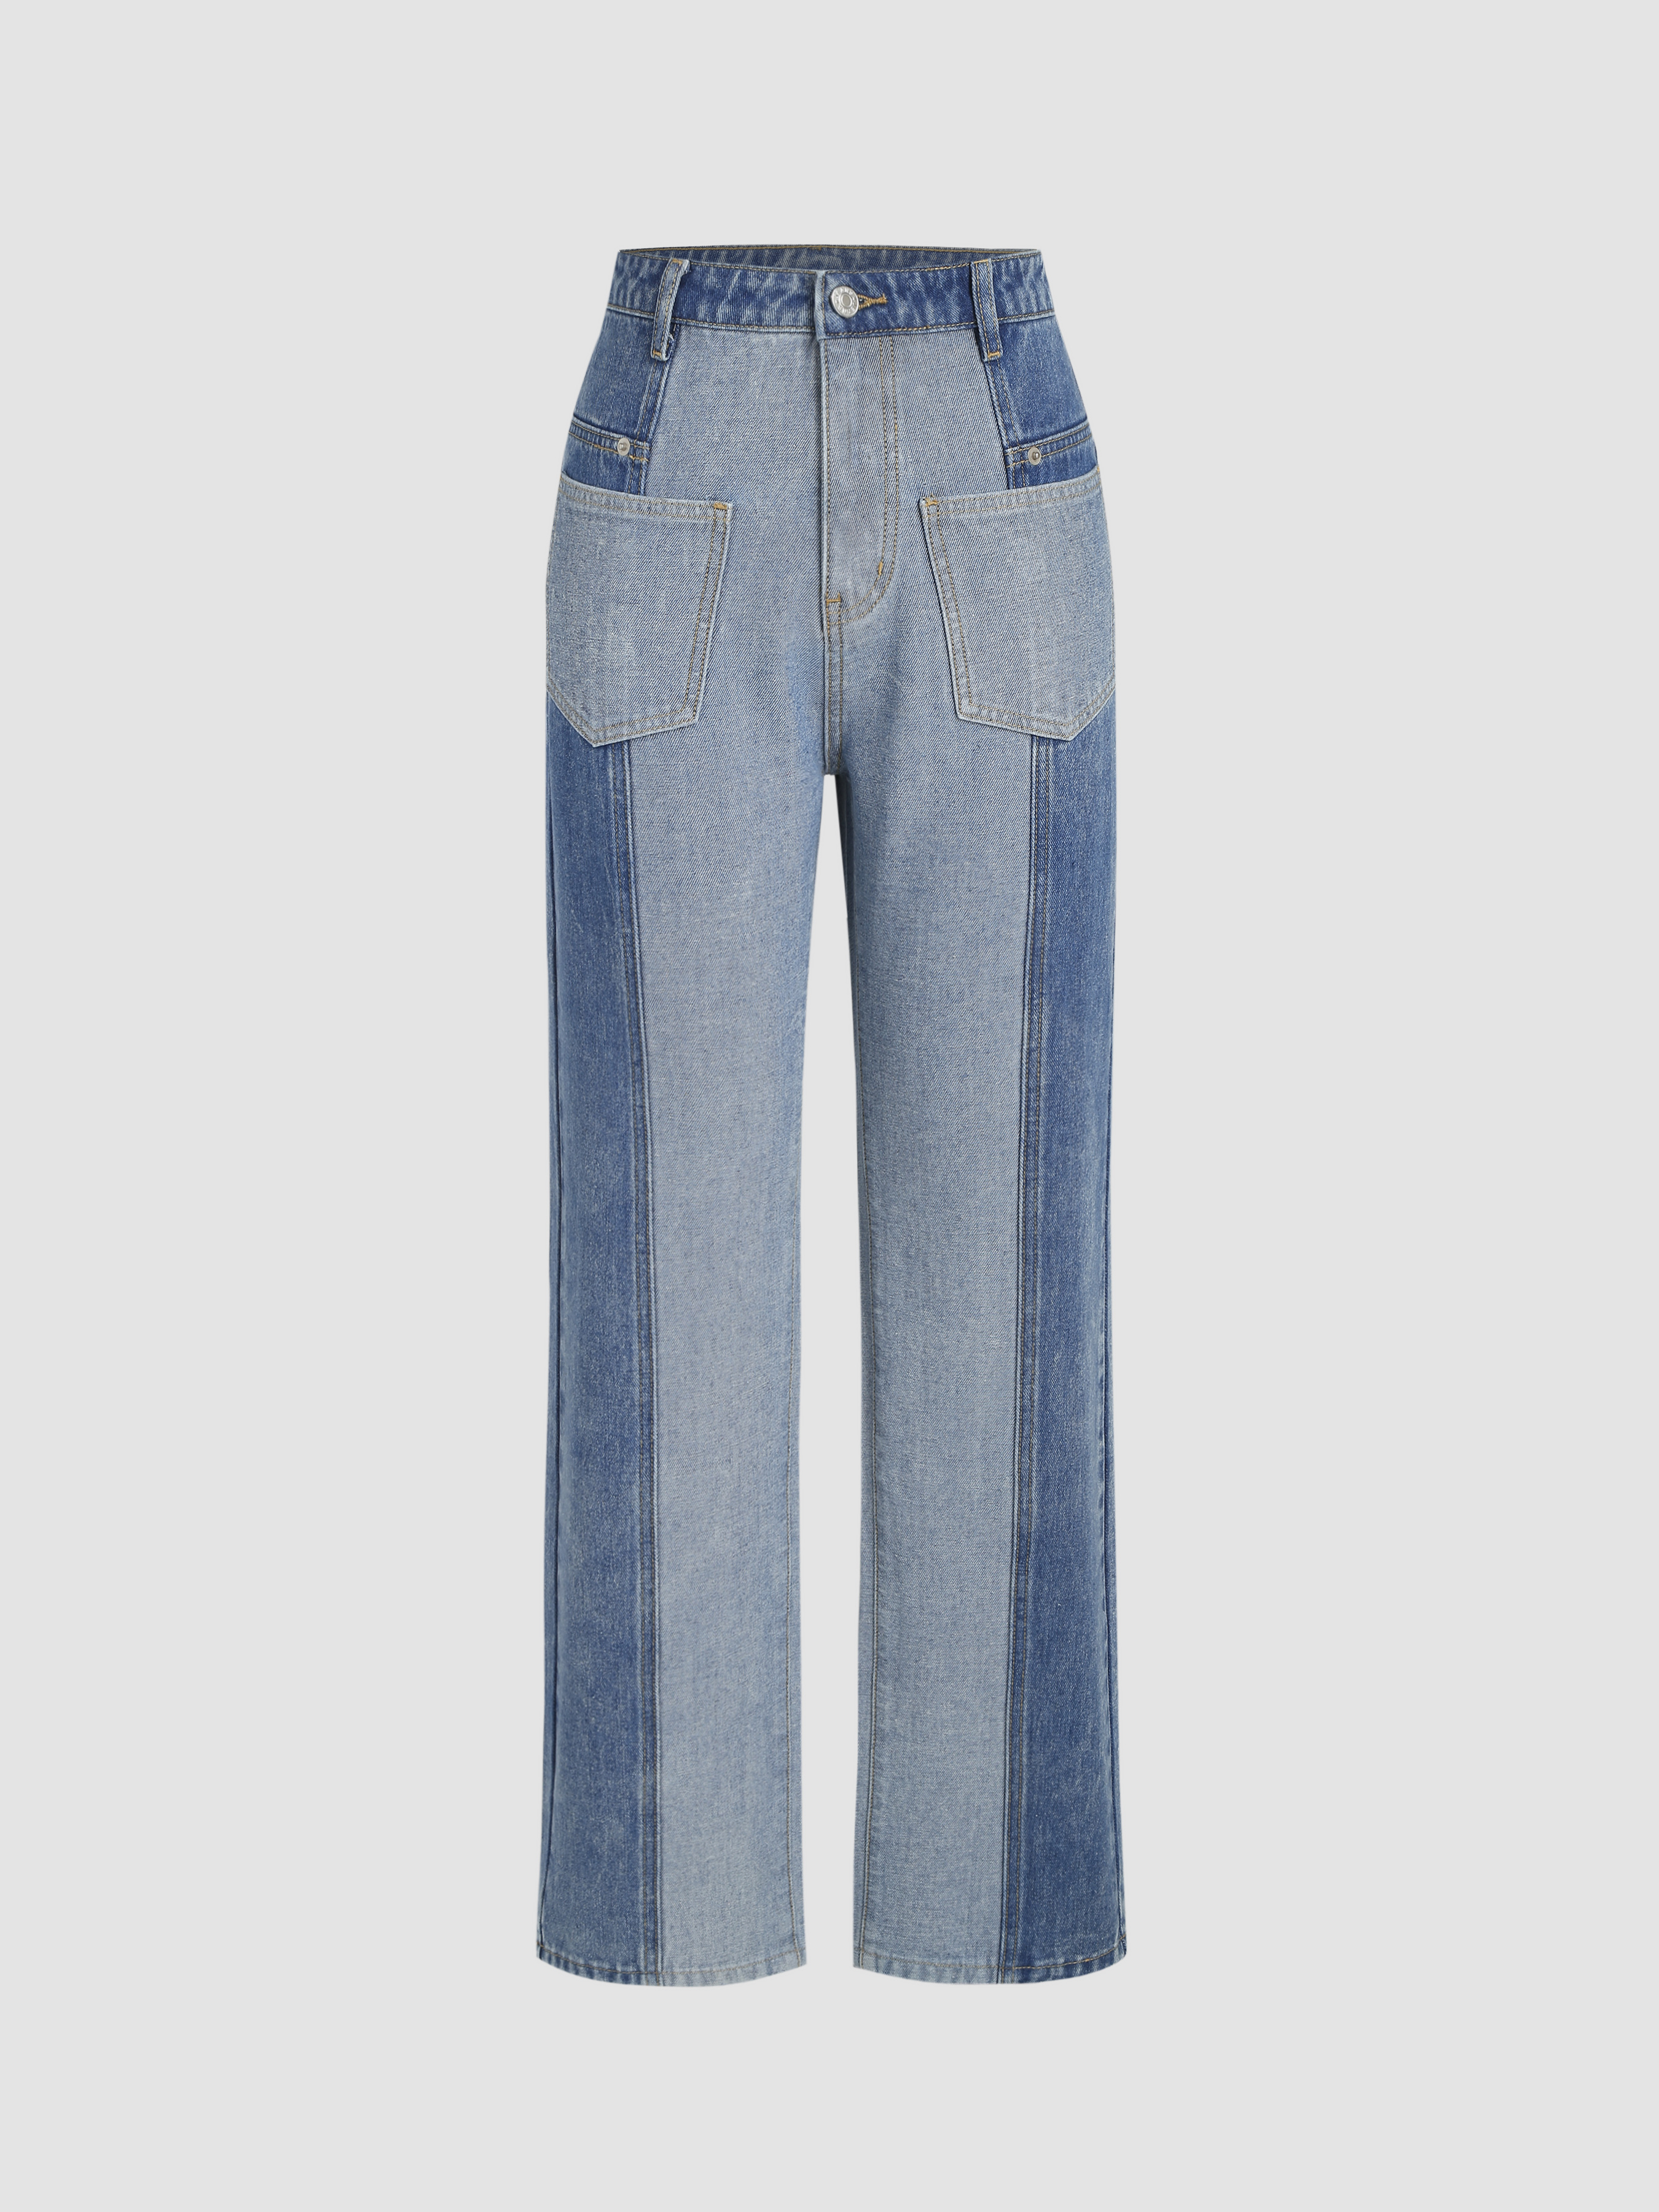 The D'Evas Boutique Patchwork Jeans Small (0-2)